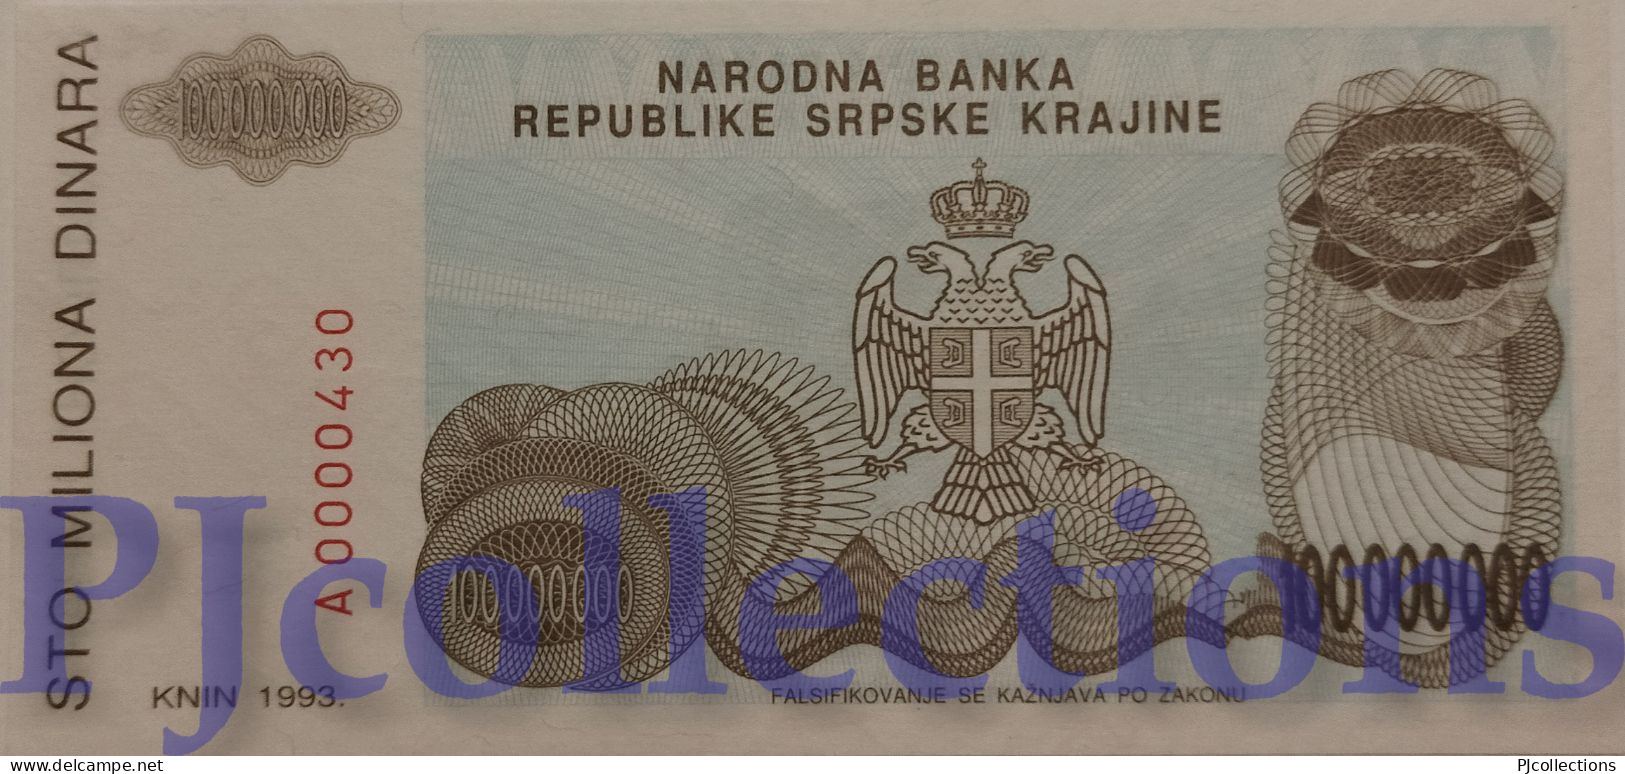 CROATIA 100 MILLION DINARA 1993 PICK R25 UNC LOW SERIAL NUMBER "A0000430" - Croatie